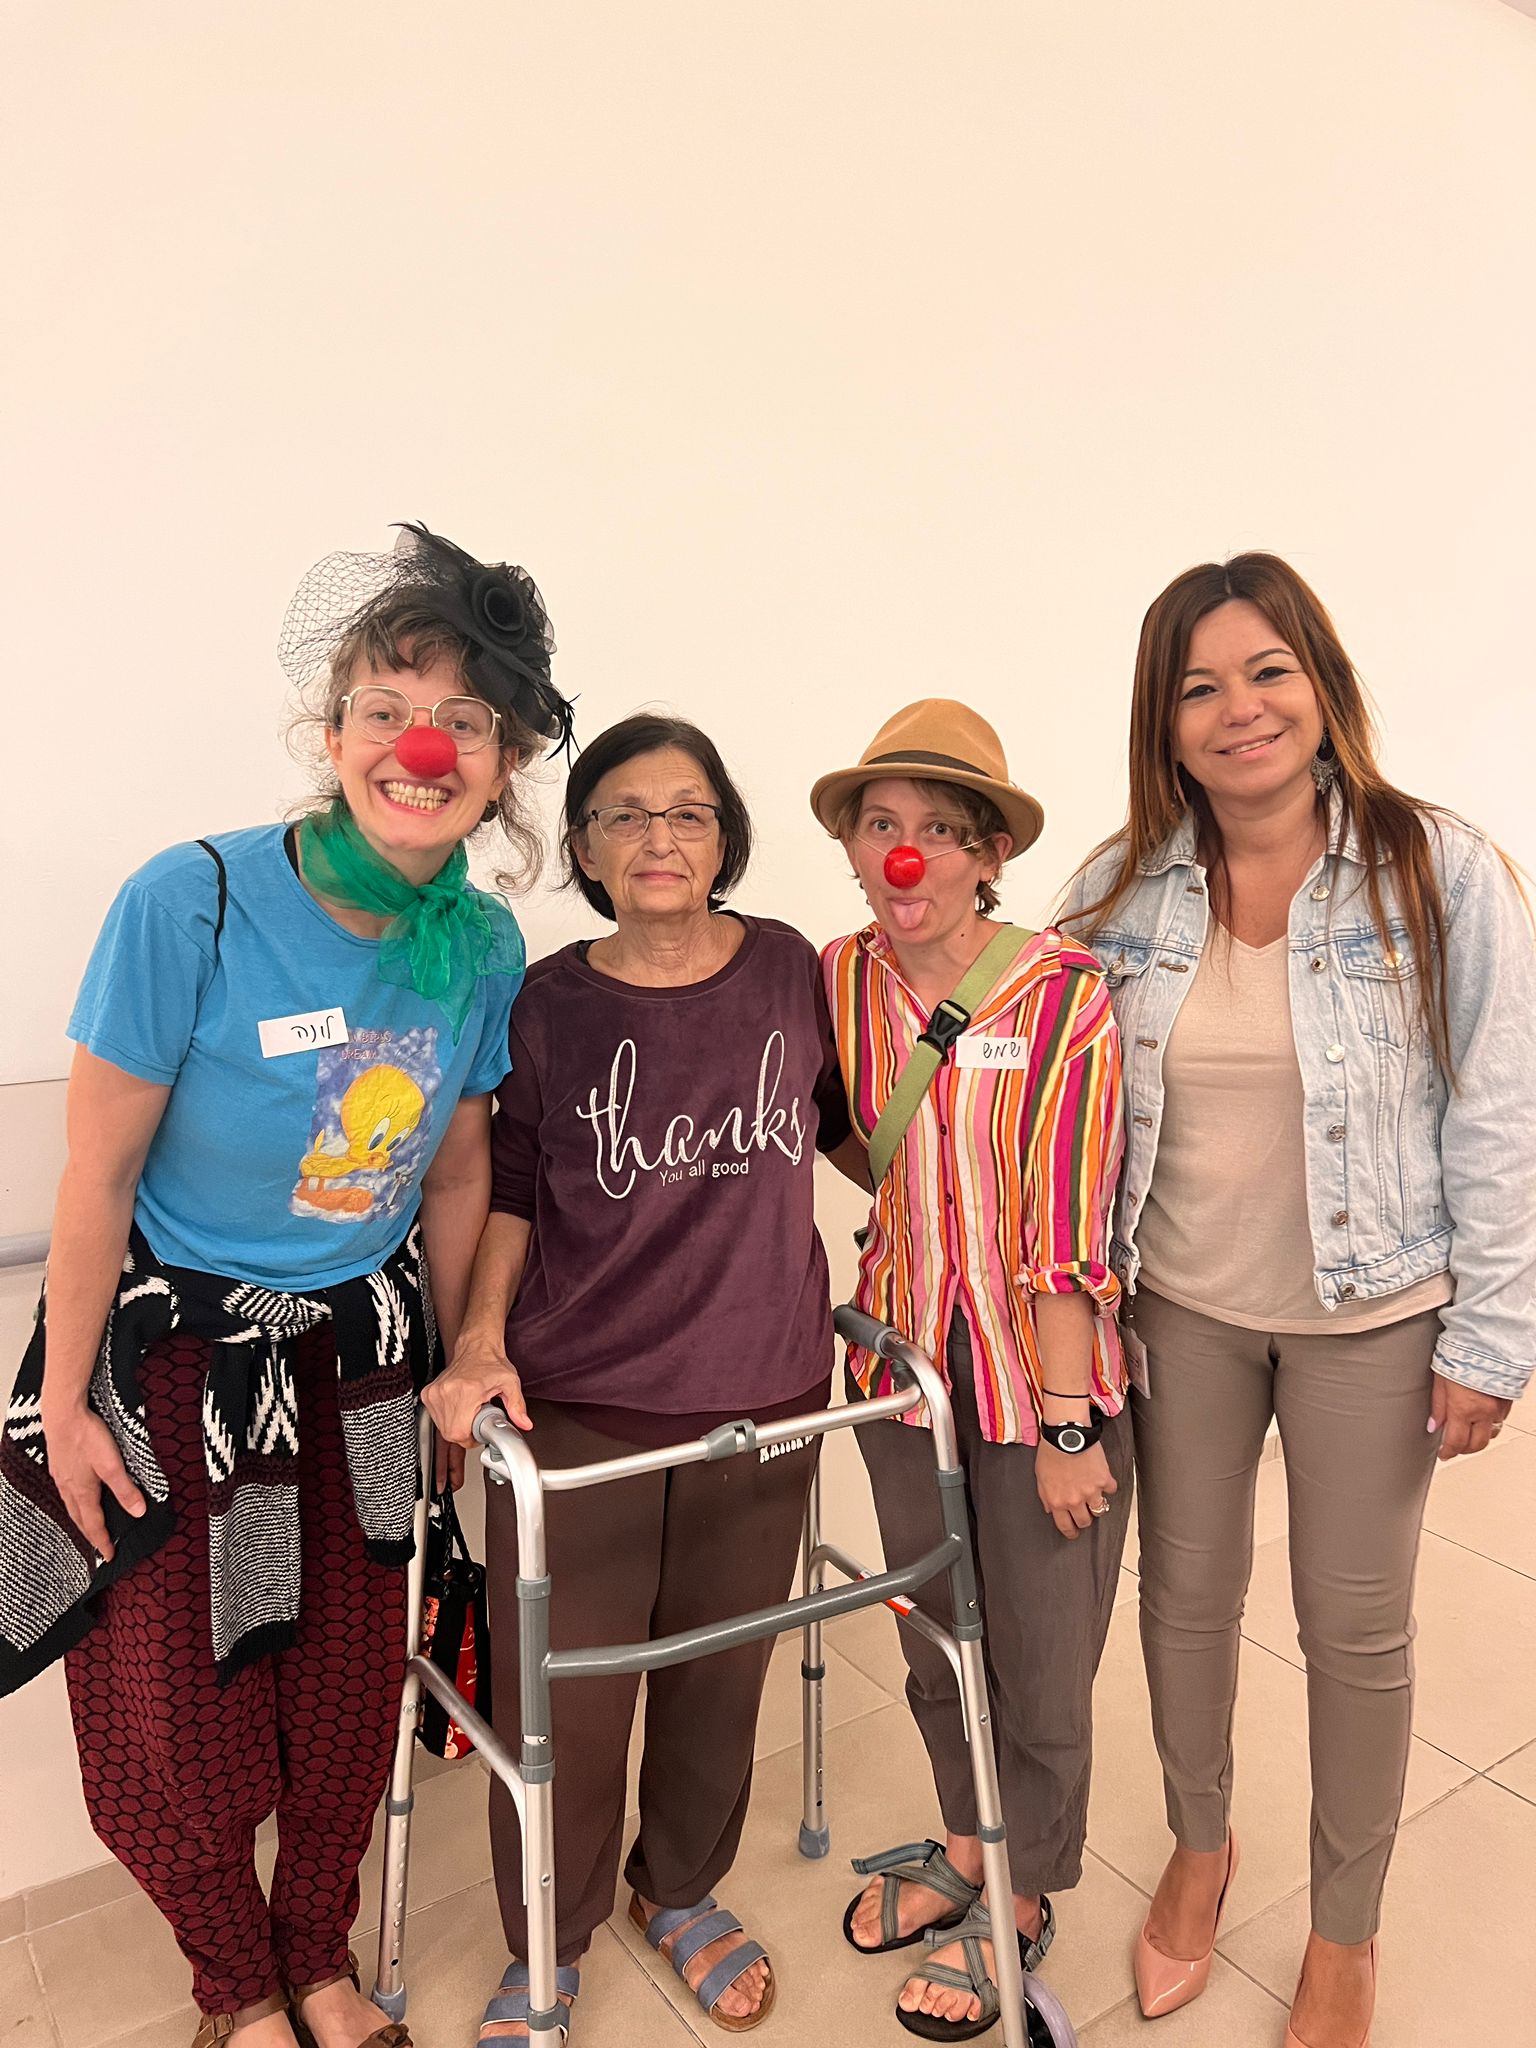 אישה עם הליכון עומדת עם ליצנים רפואיים ואשת צוות Woman with a walker standing next to medical clowns and employee